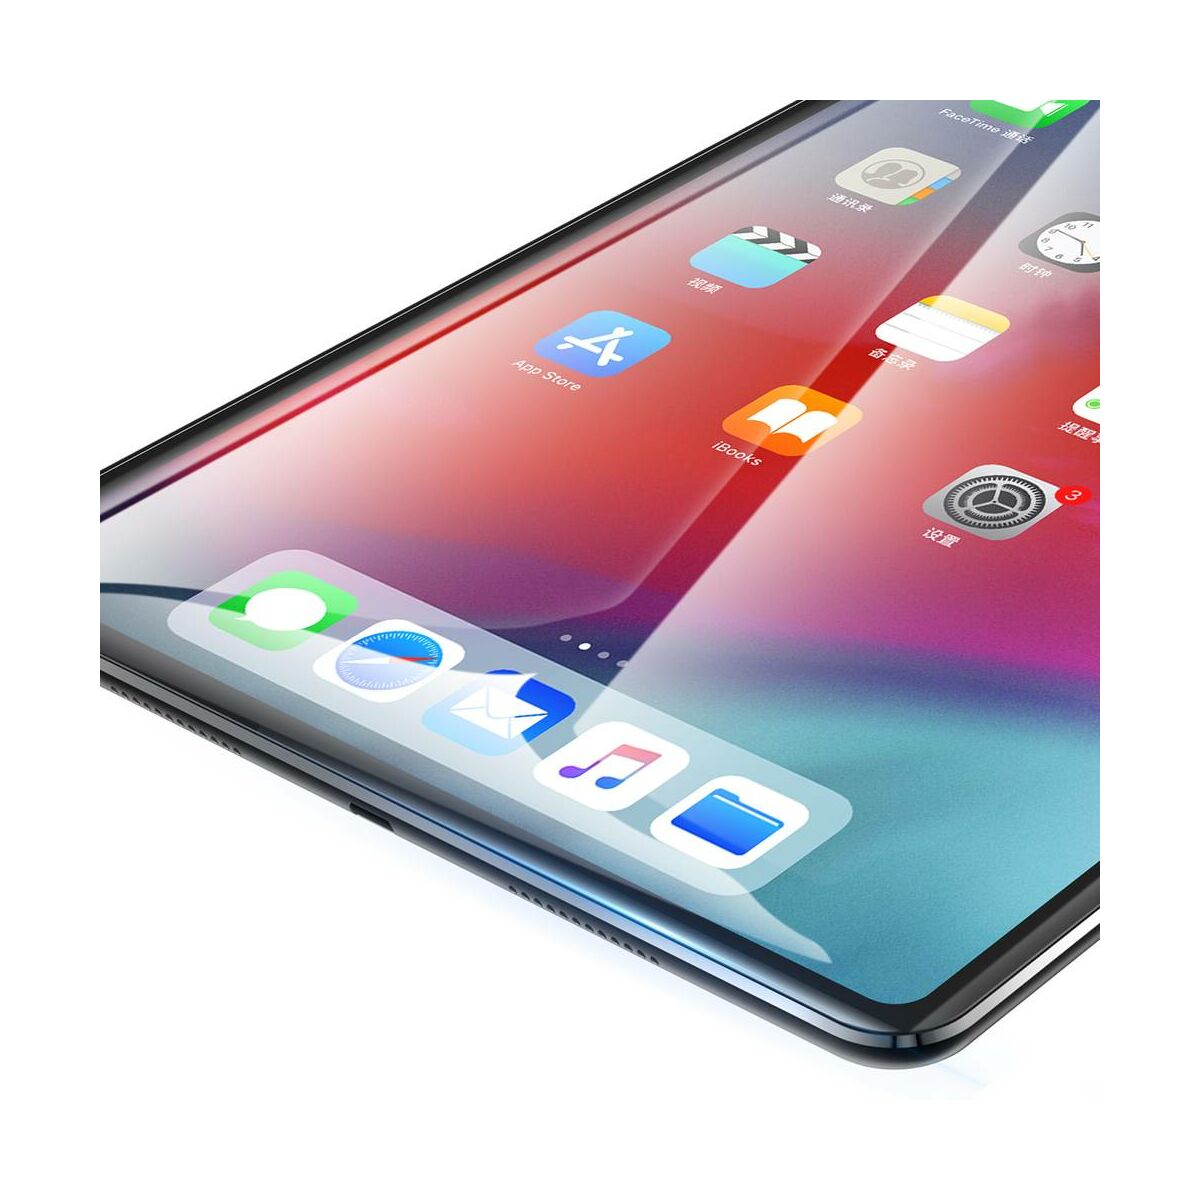 Baseus iPad Pro 11" 0.3 mm, edzett üveg kijelzővédő fólia, átlátszó (SGAPIPD-CX02)